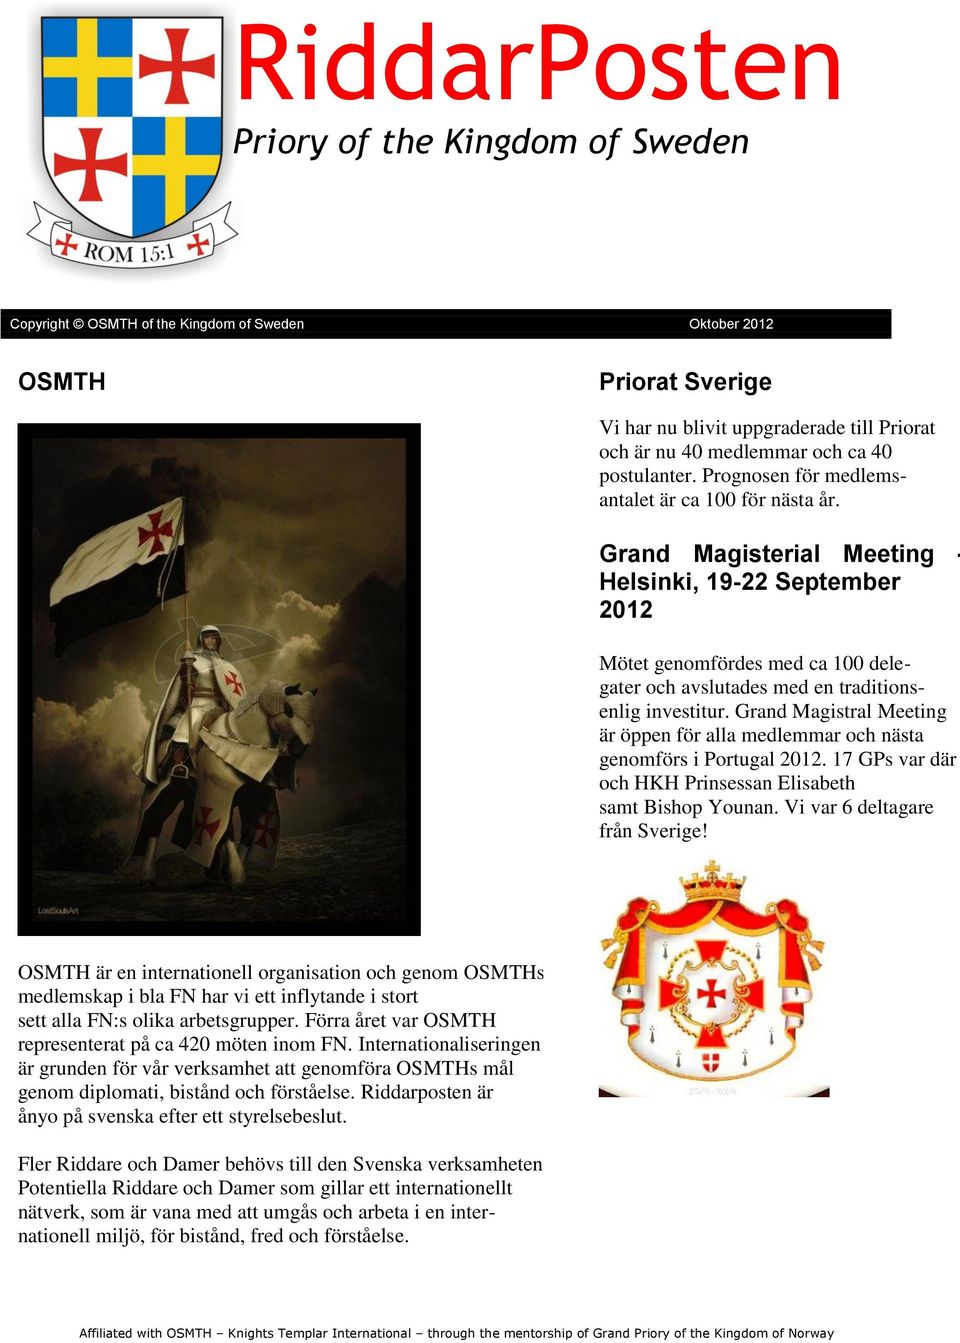 Grand Magistral Meeting är öppen för alla medlemmar och nästa genomförs i Portugal 2012. 17 GPs var där och HKH Prinsessan Elisabeth samt Bishop Younan. Vi var 6 deltagare från Sverige!